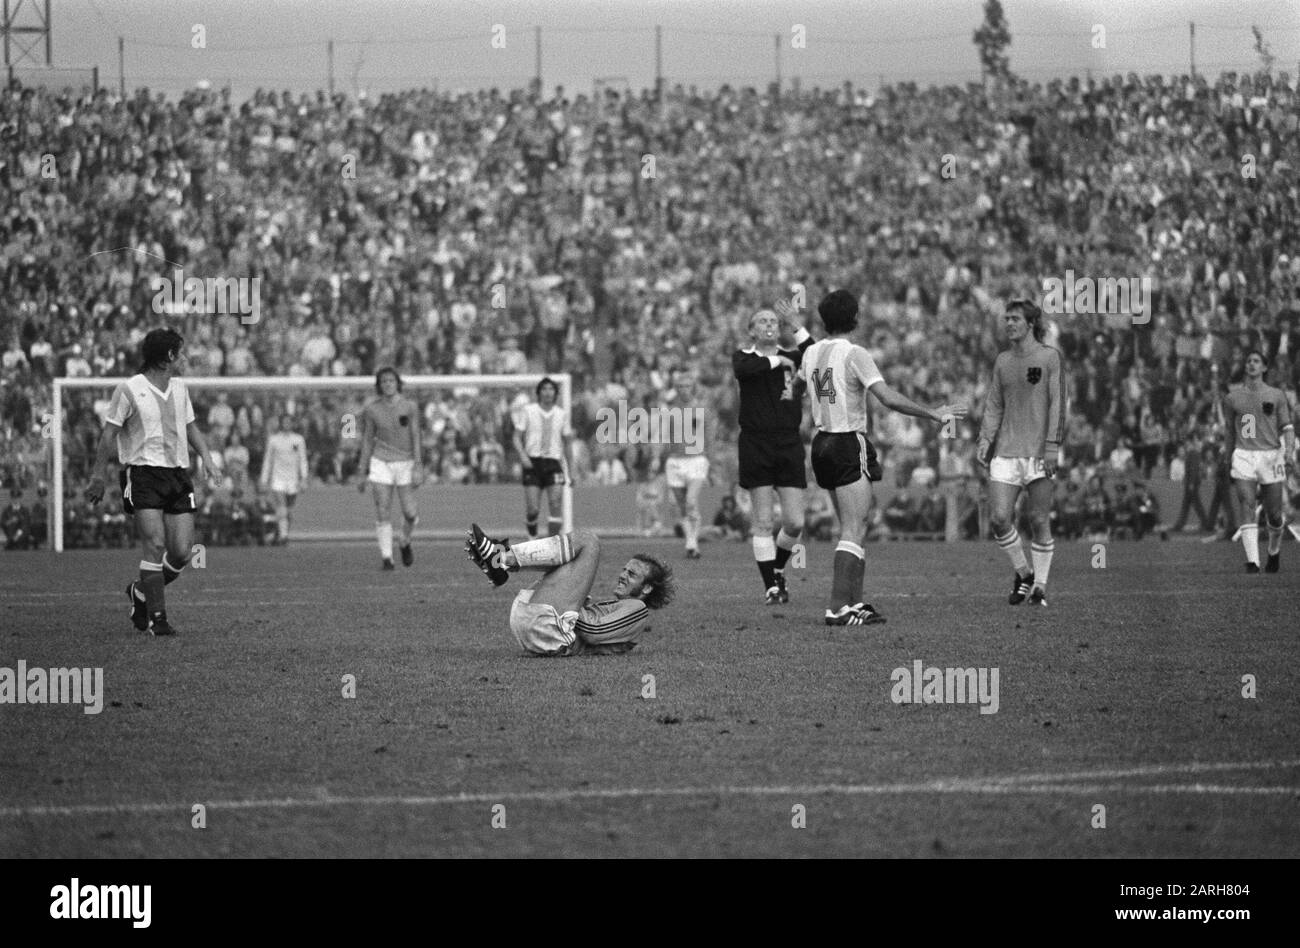 Weltmeisterschaft 74, Niederlande gegen Argentinien 4-0 Datum: 26. Juni 1974 Schlagwörter: Sport, Fußball, Weltmeisterschaften Stockfoto